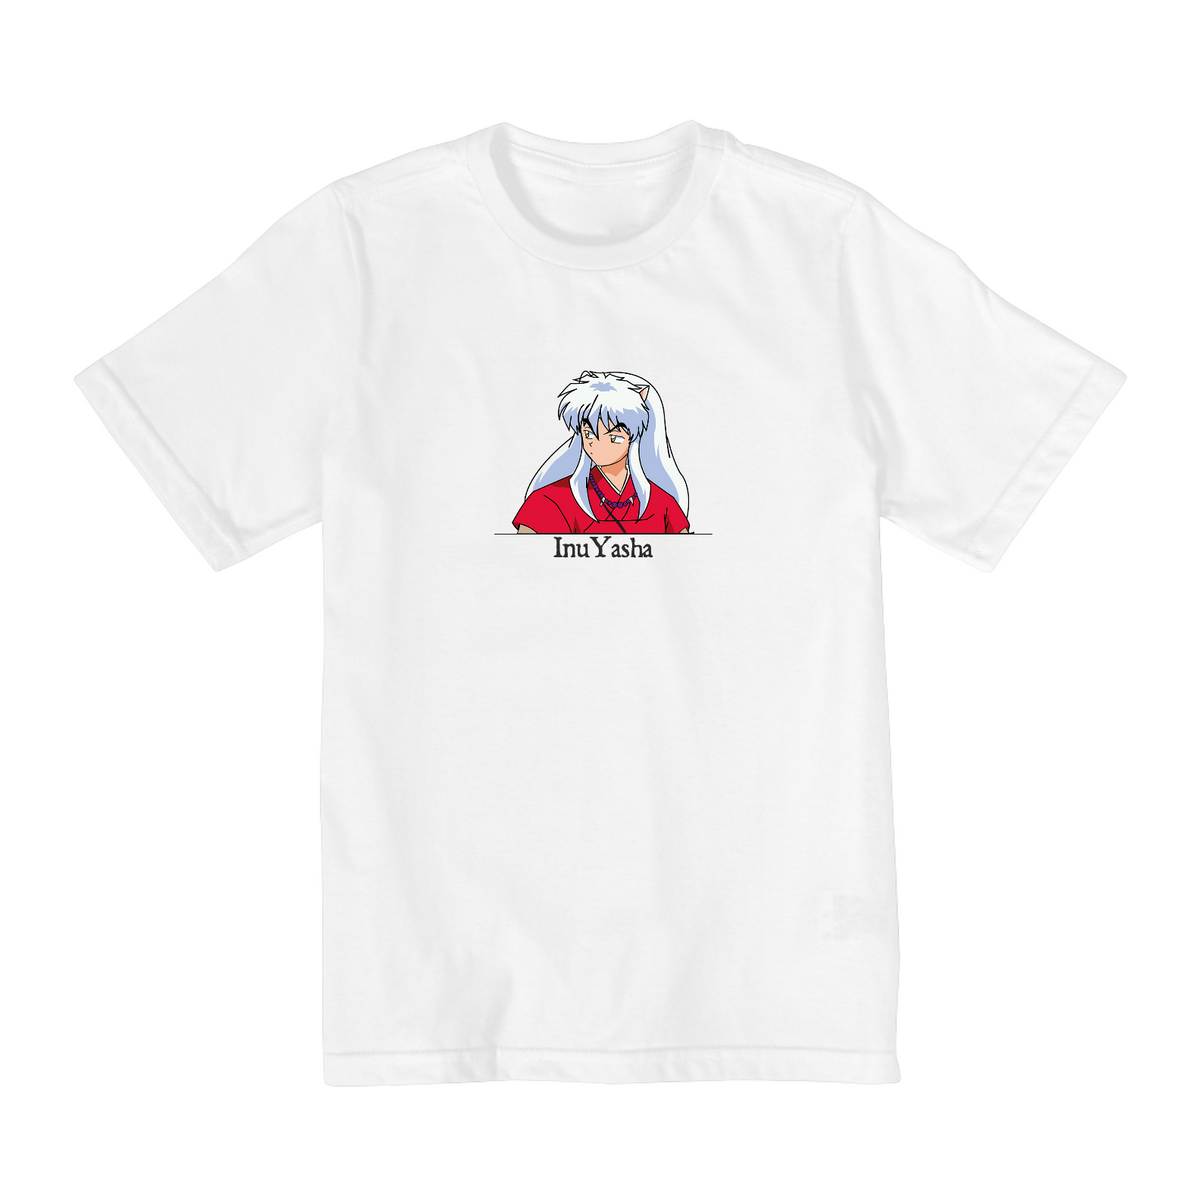 Nome do produto: Camiseta Infantil (2 a 8) InuYasha 3